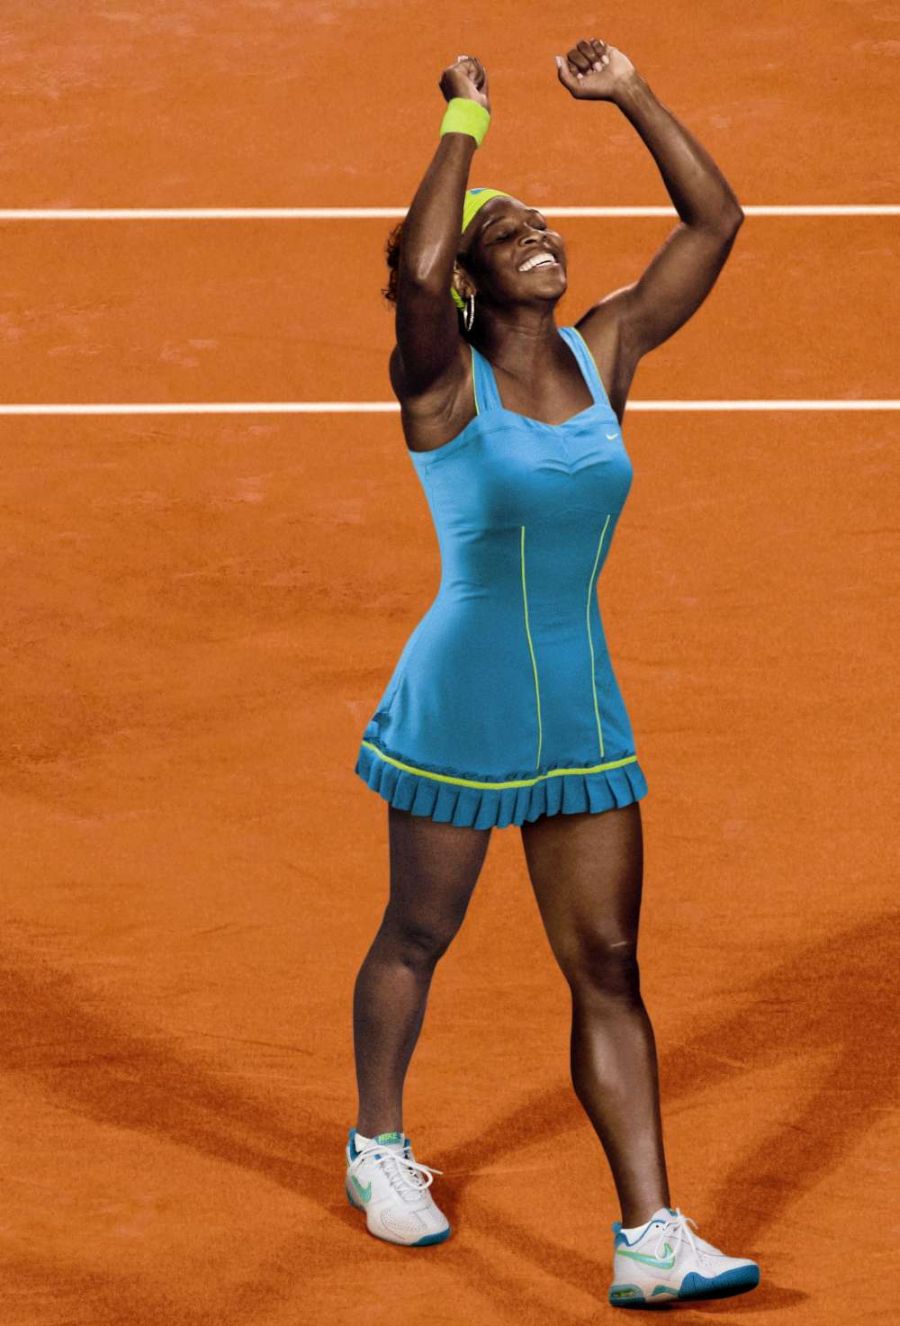 WTA Madryt: Serena Williams pokonała Marię Szarapową 